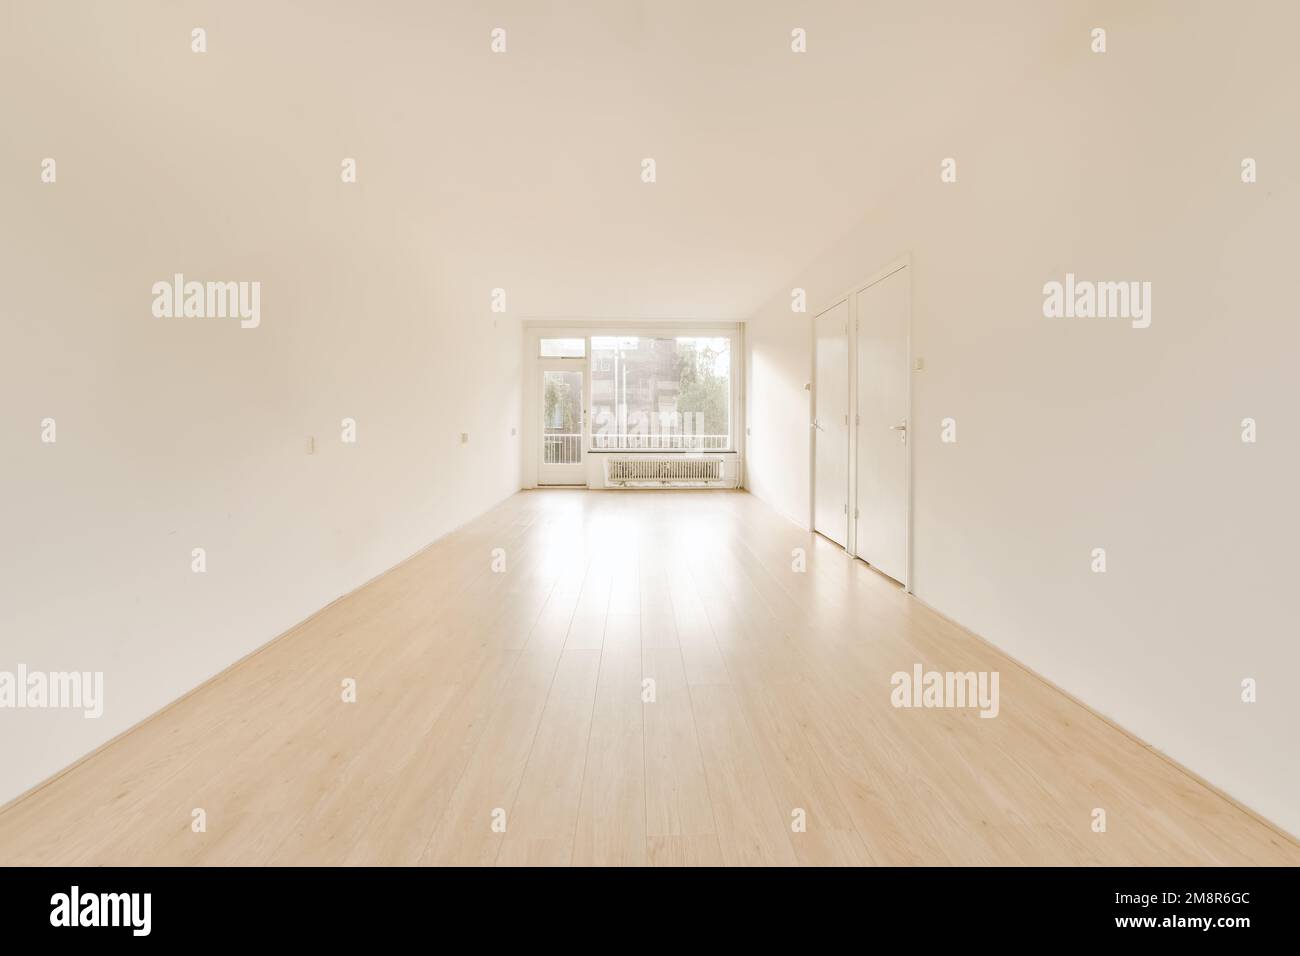 una stanza vuota con pareti bianche e pavimento in legno duro nella parte centrale della stanza è pavimenti in legno chiaro Foto Stock